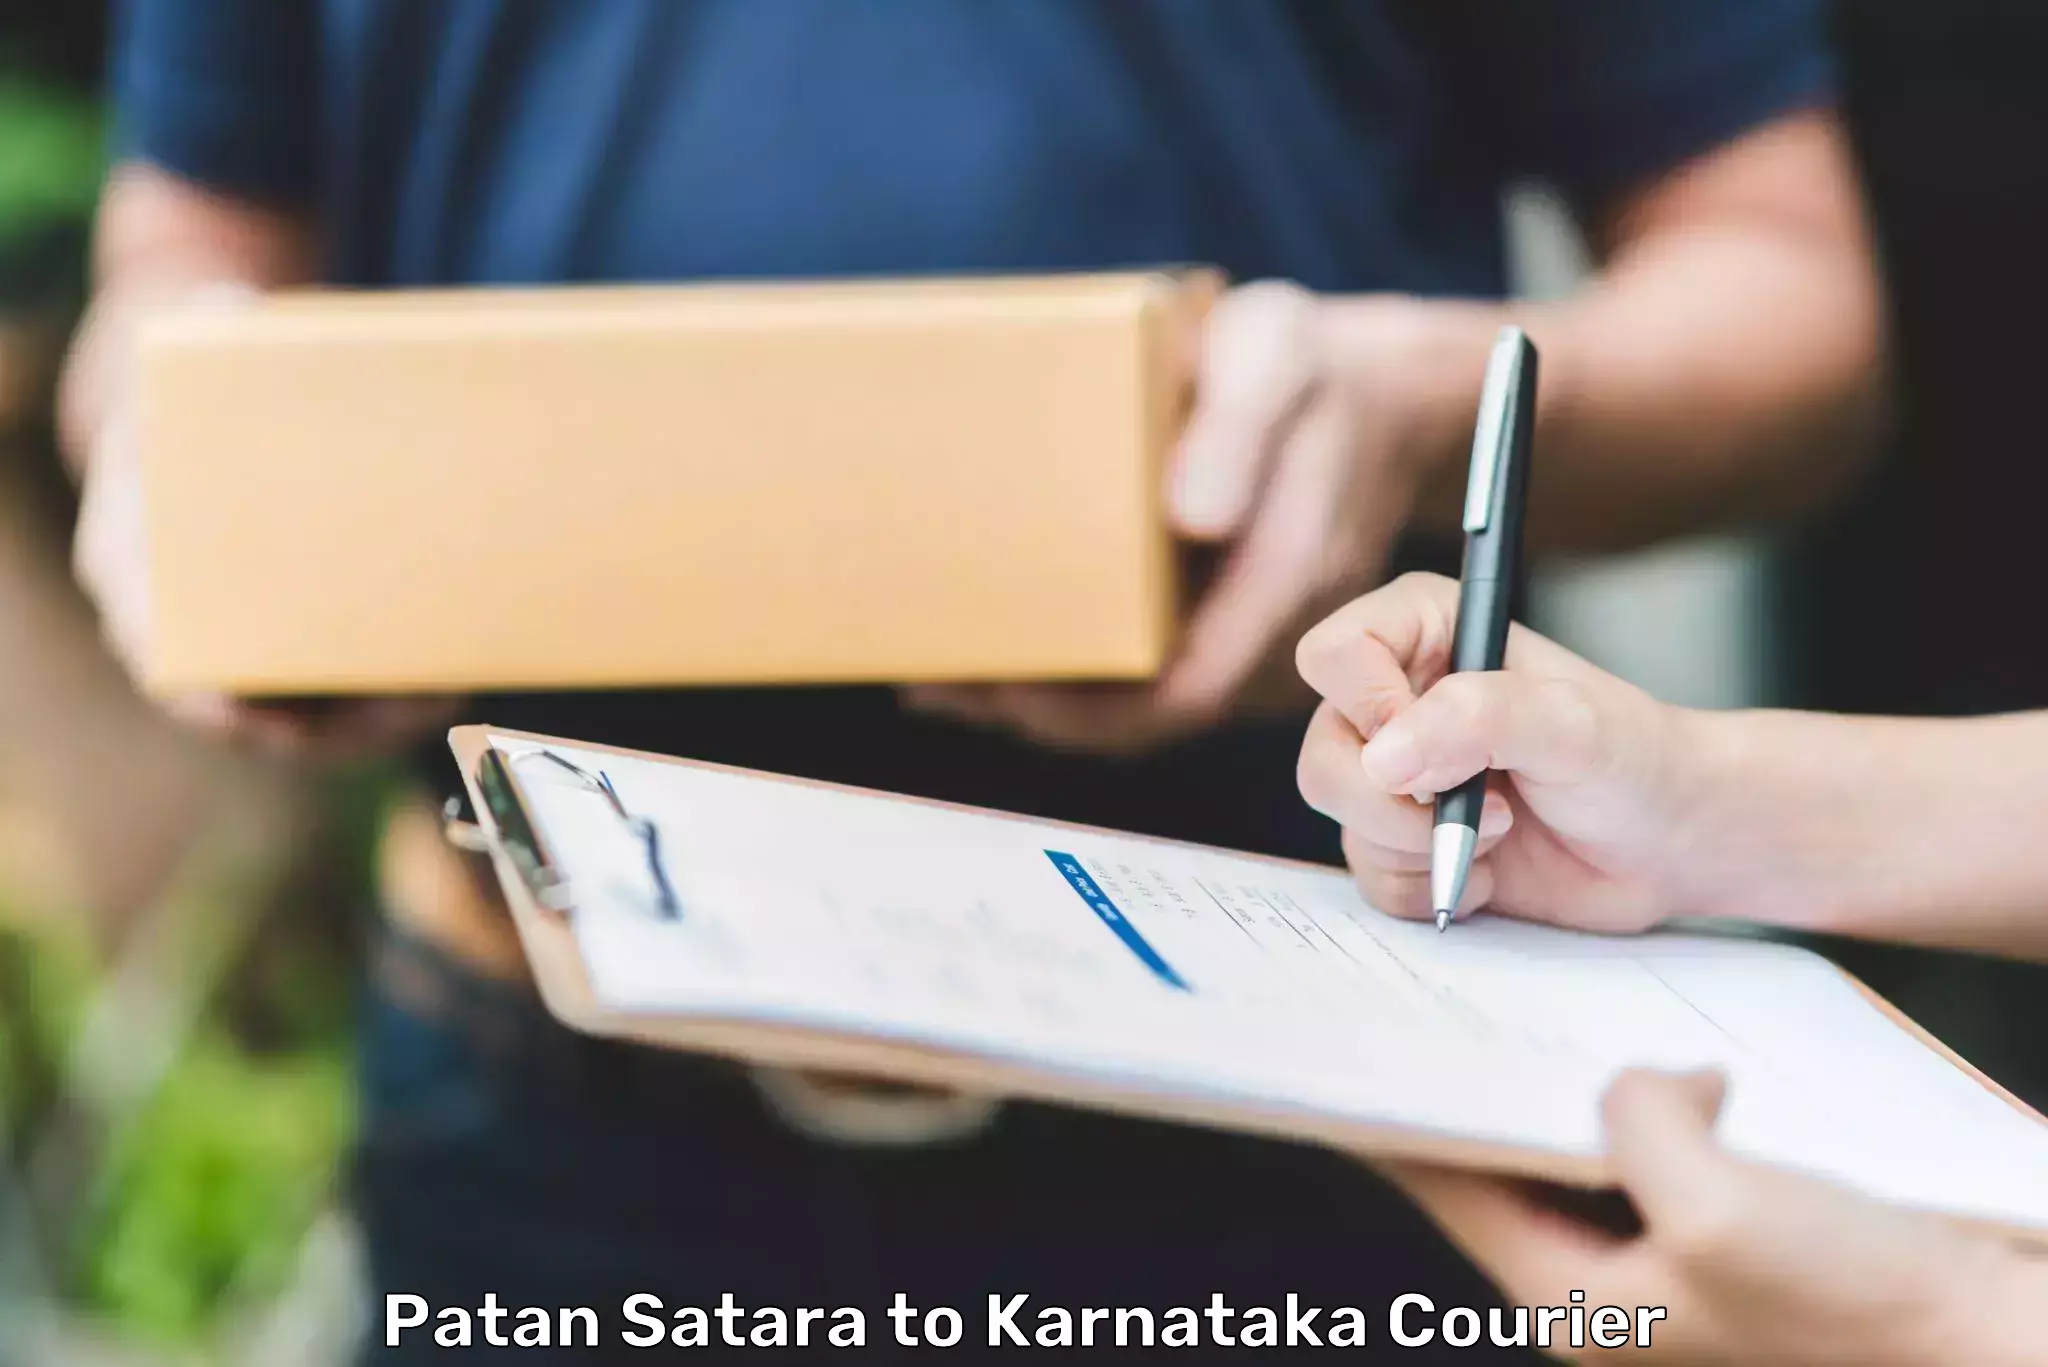 Fast-track shipping solutions Patan Satara to Karnataka